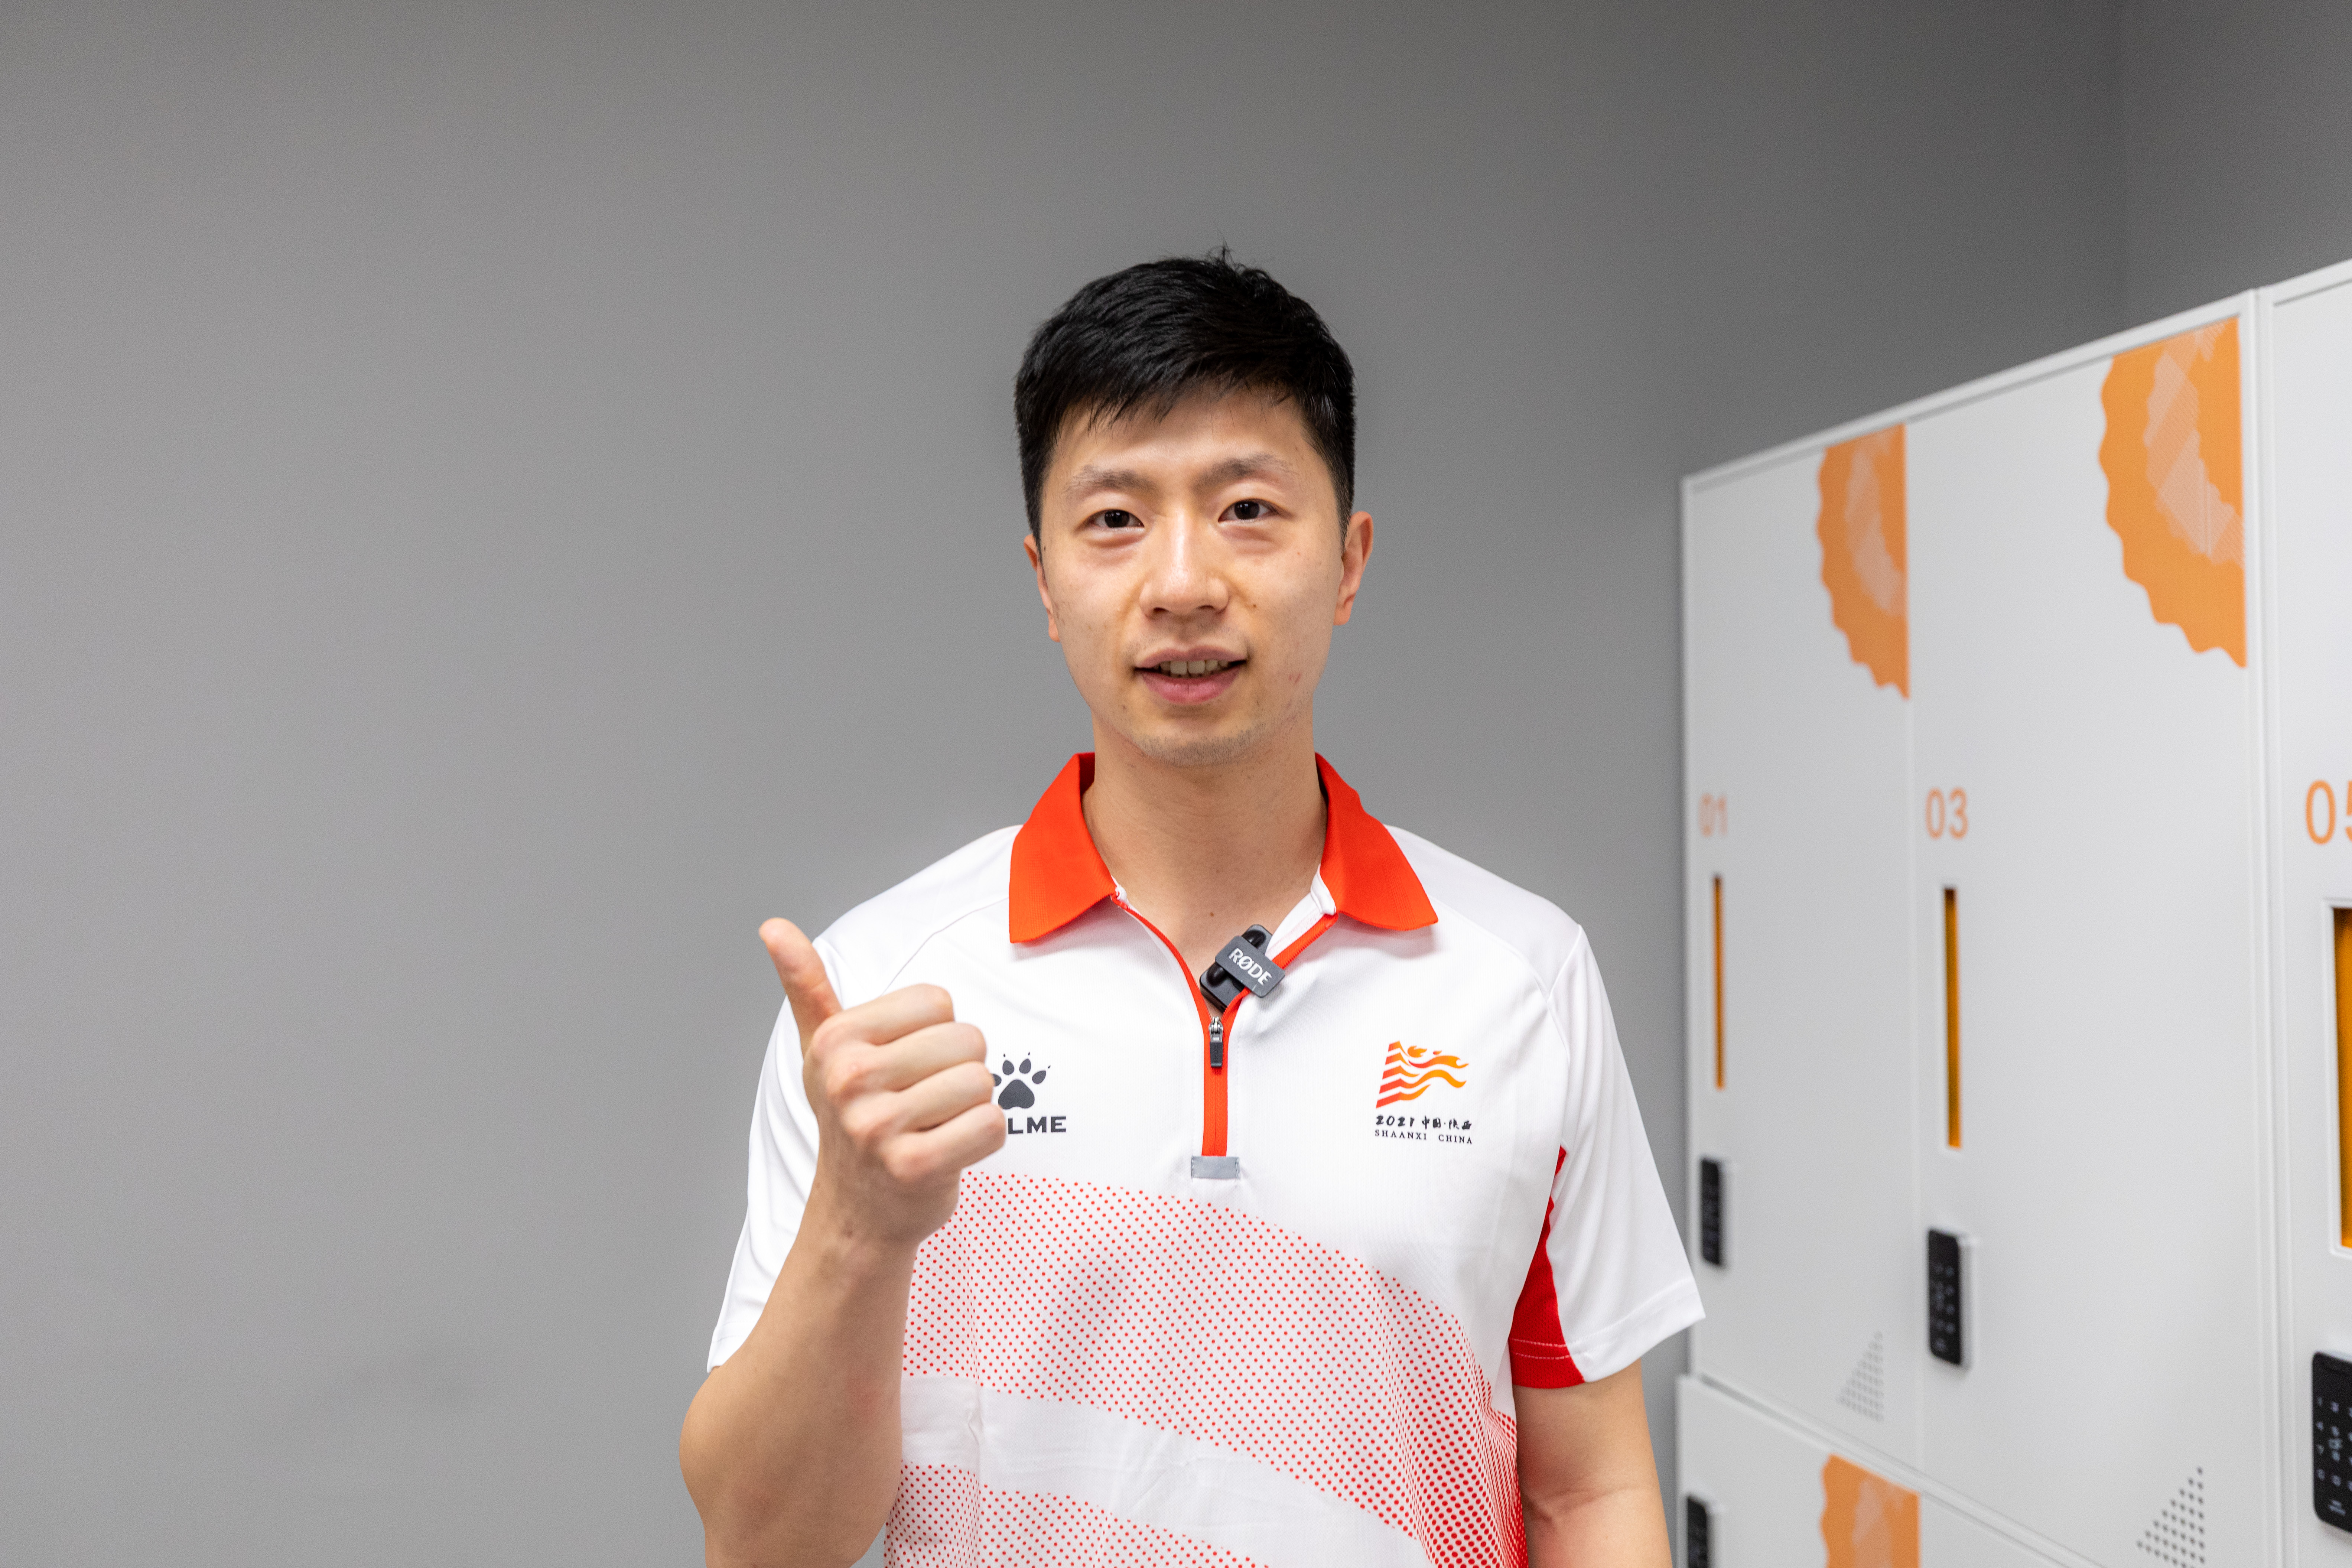 第五棒火炬手是中国乒乓球队男队队长,大满贯获得者马龙